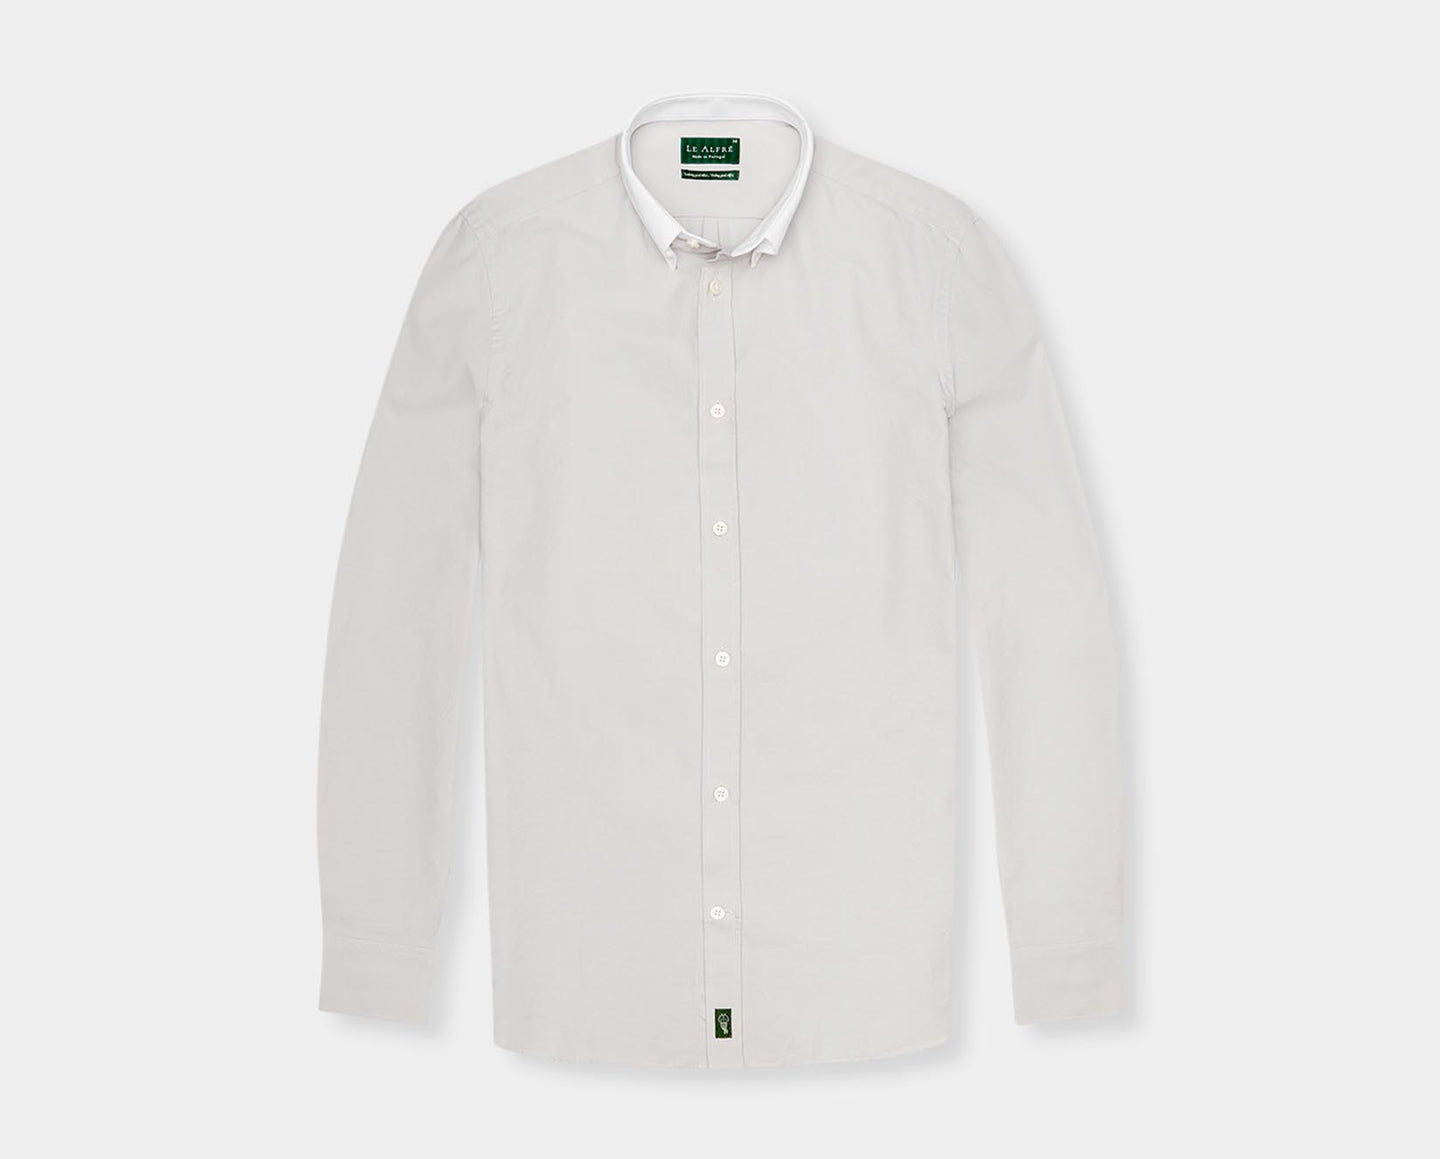 'Le Original' Gray Contrast Collar Oxford Shirt